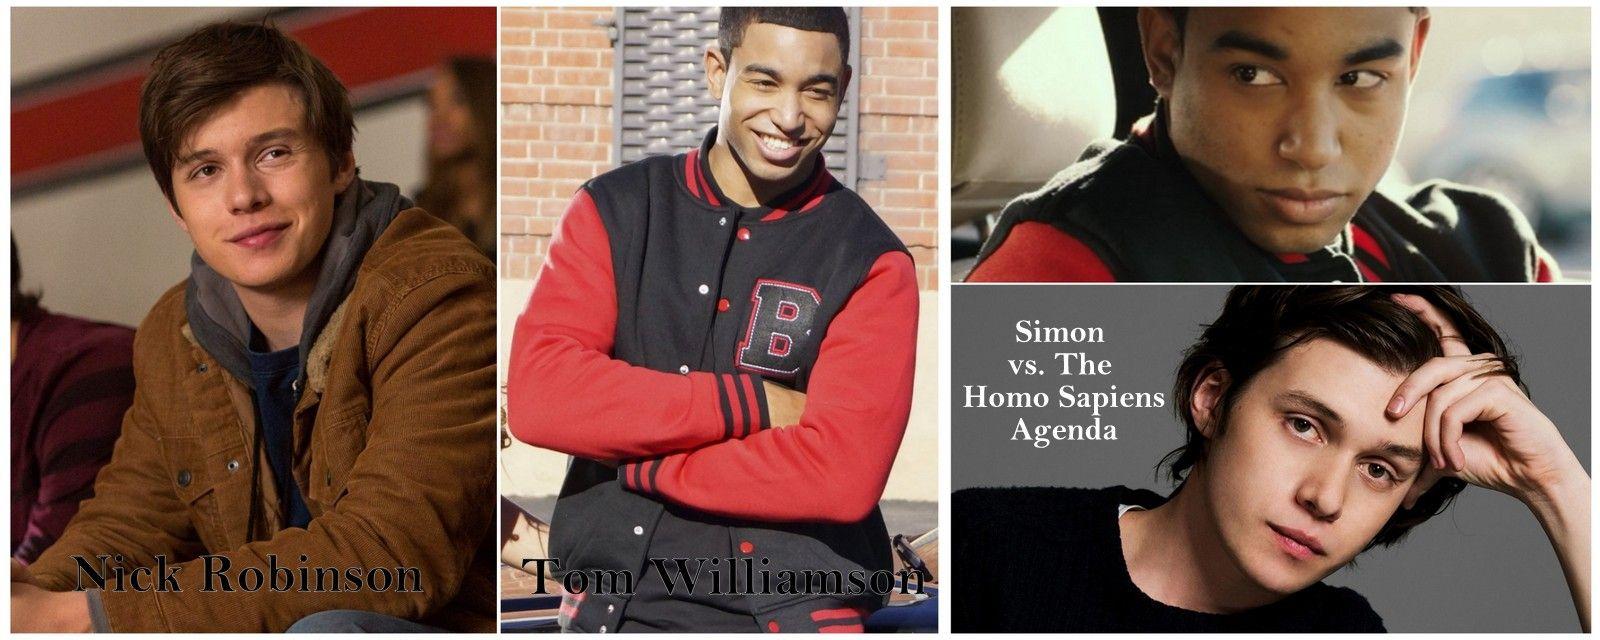 My dream cast for Simon and Bram for Simon vs. the Homo Sapiens